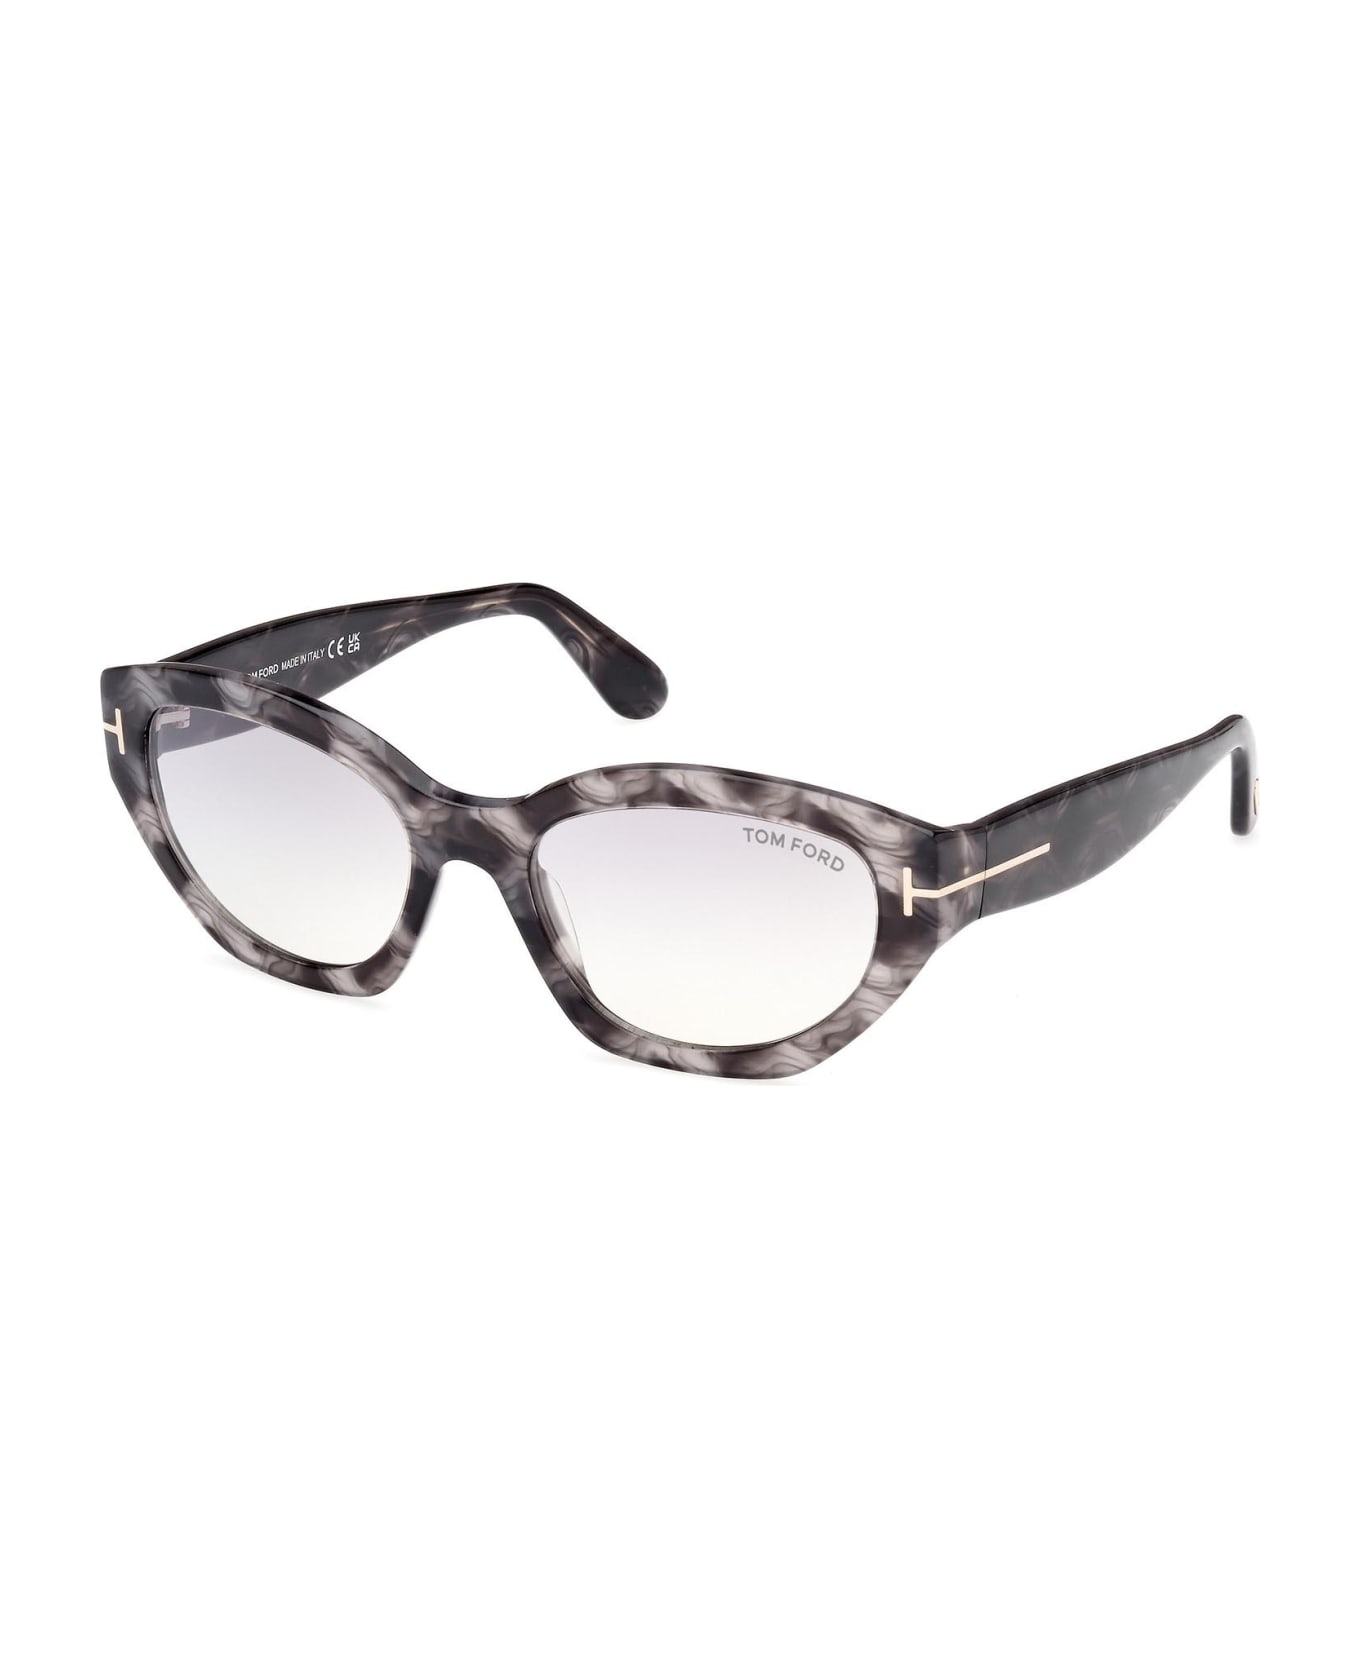 Tom Ford Eyewear Sunglasses - Grigio/Grigio